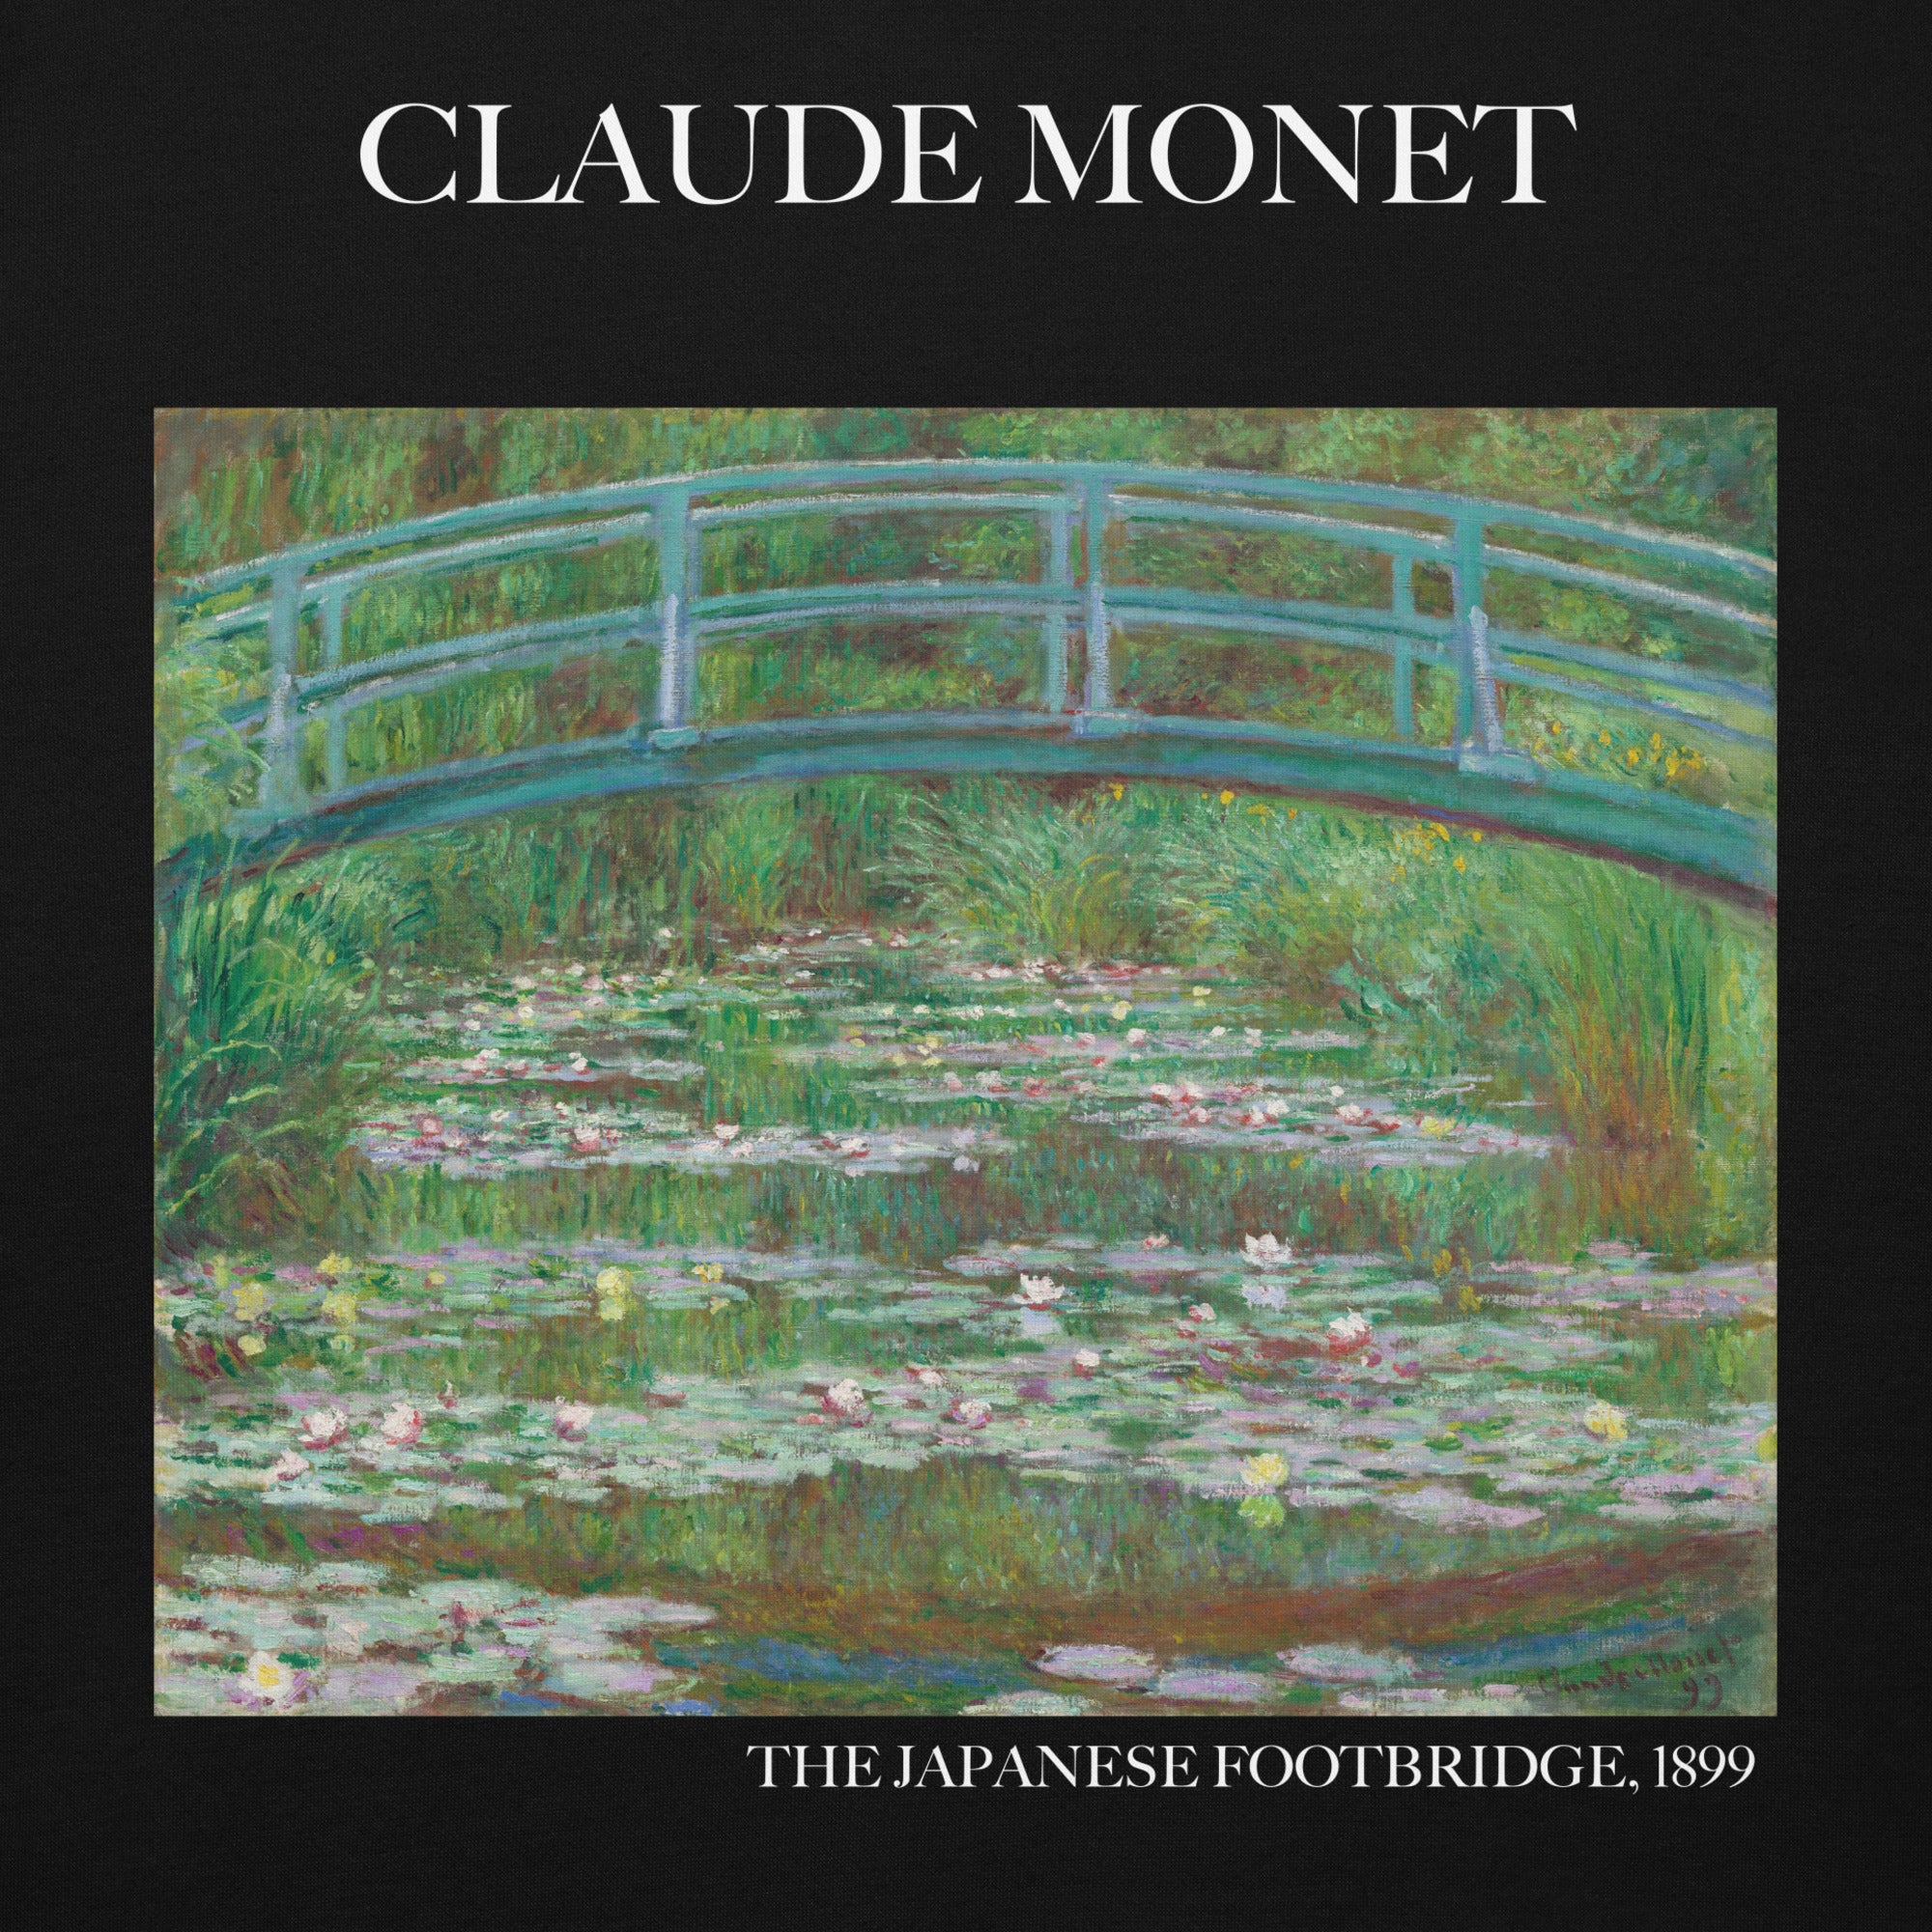 Claude Monet 'The Japanese Footbridge' Famous Painting Hoodie | Unisex Premium Art Hoodie